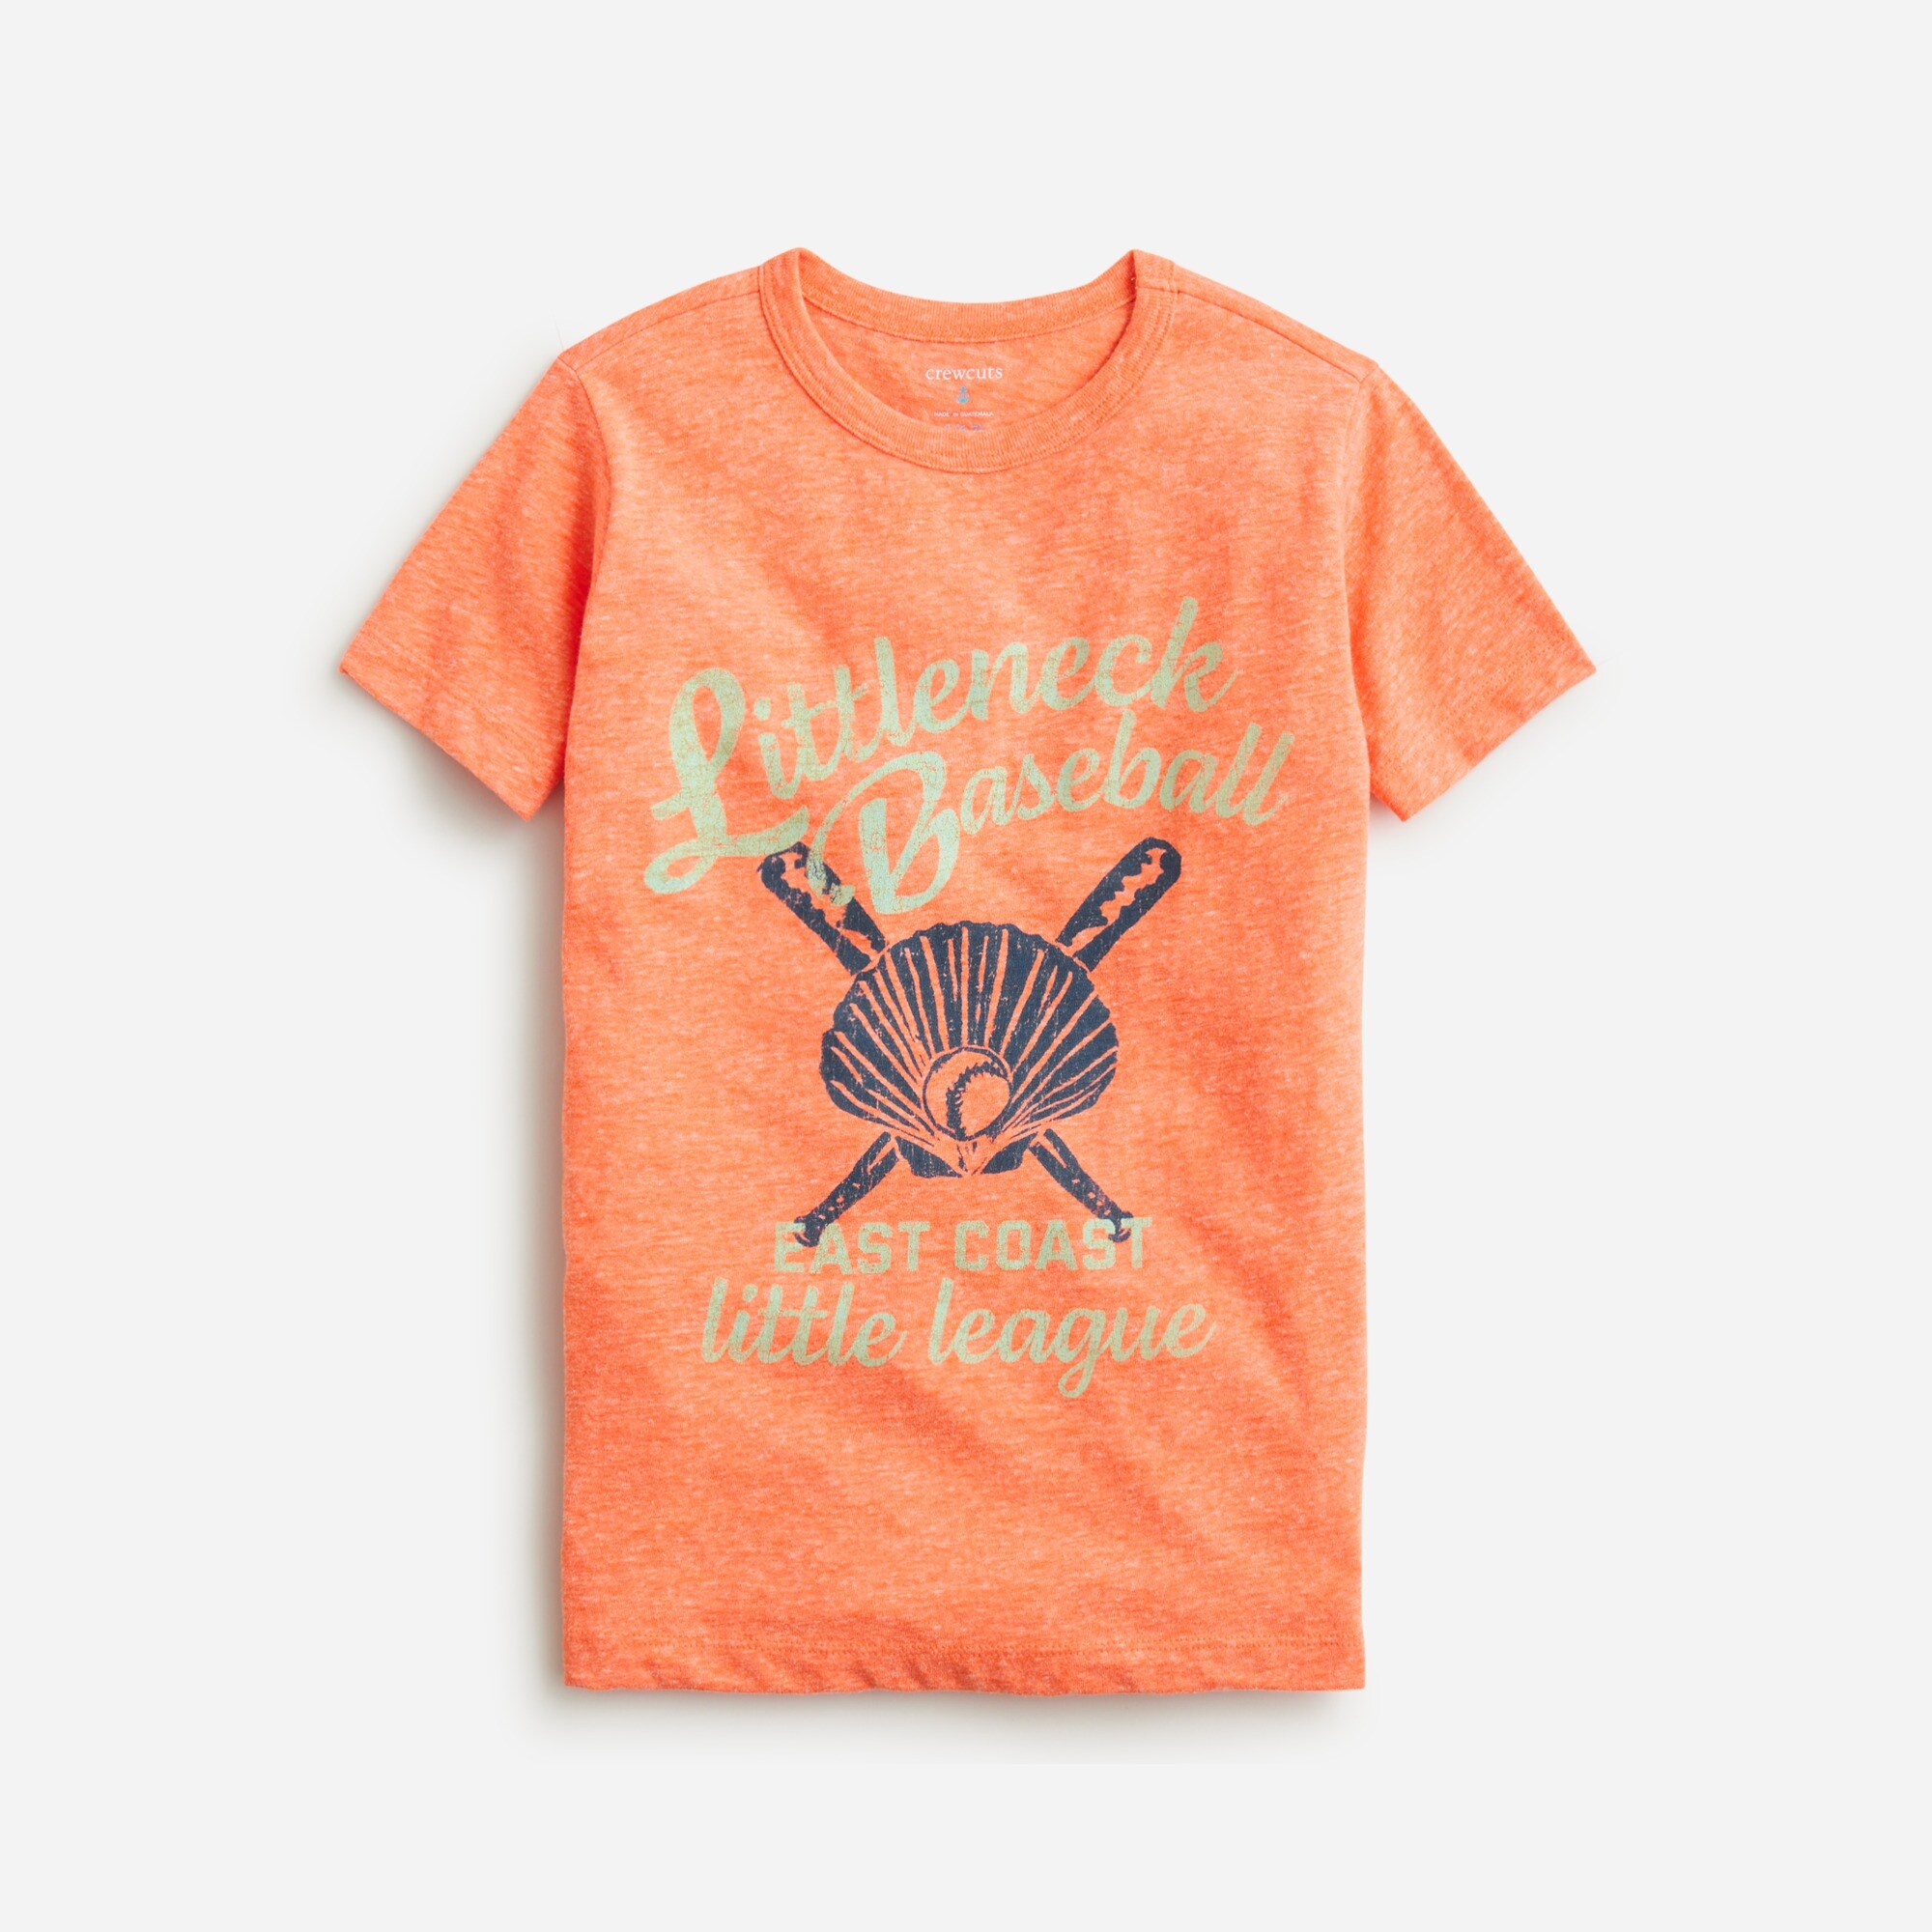  Kids' short-sleeve Little League graphic T-shirt